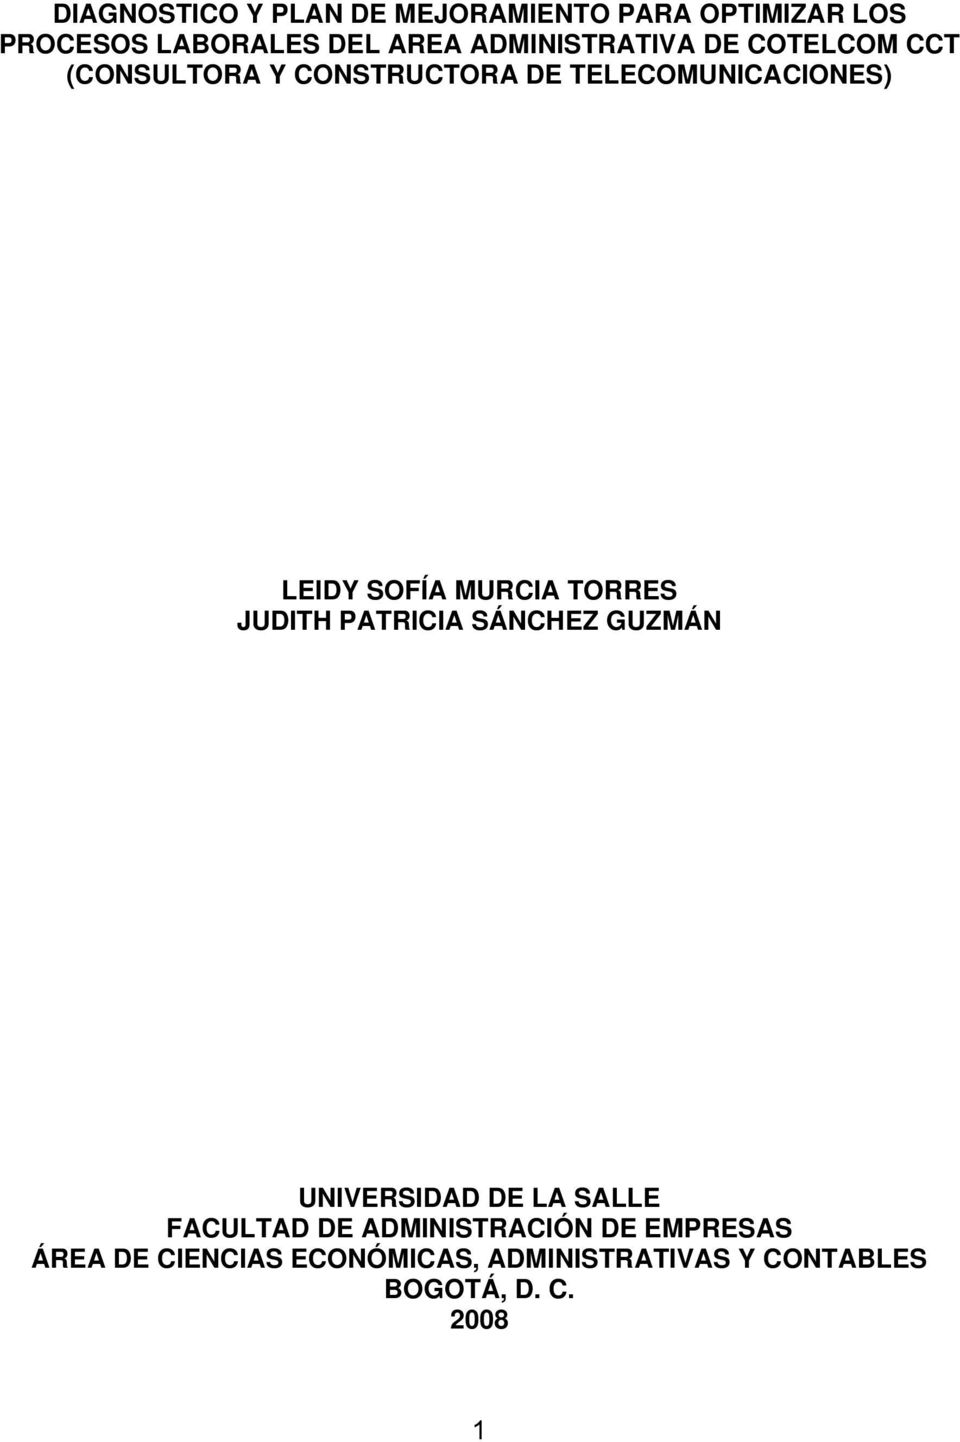 SOFÍA MURCIA TORRES JUDITH PATRICIA SÁNCHEZ GUZMÁN UNIVERSIDAD DE LA SALLE FACULTAD DE